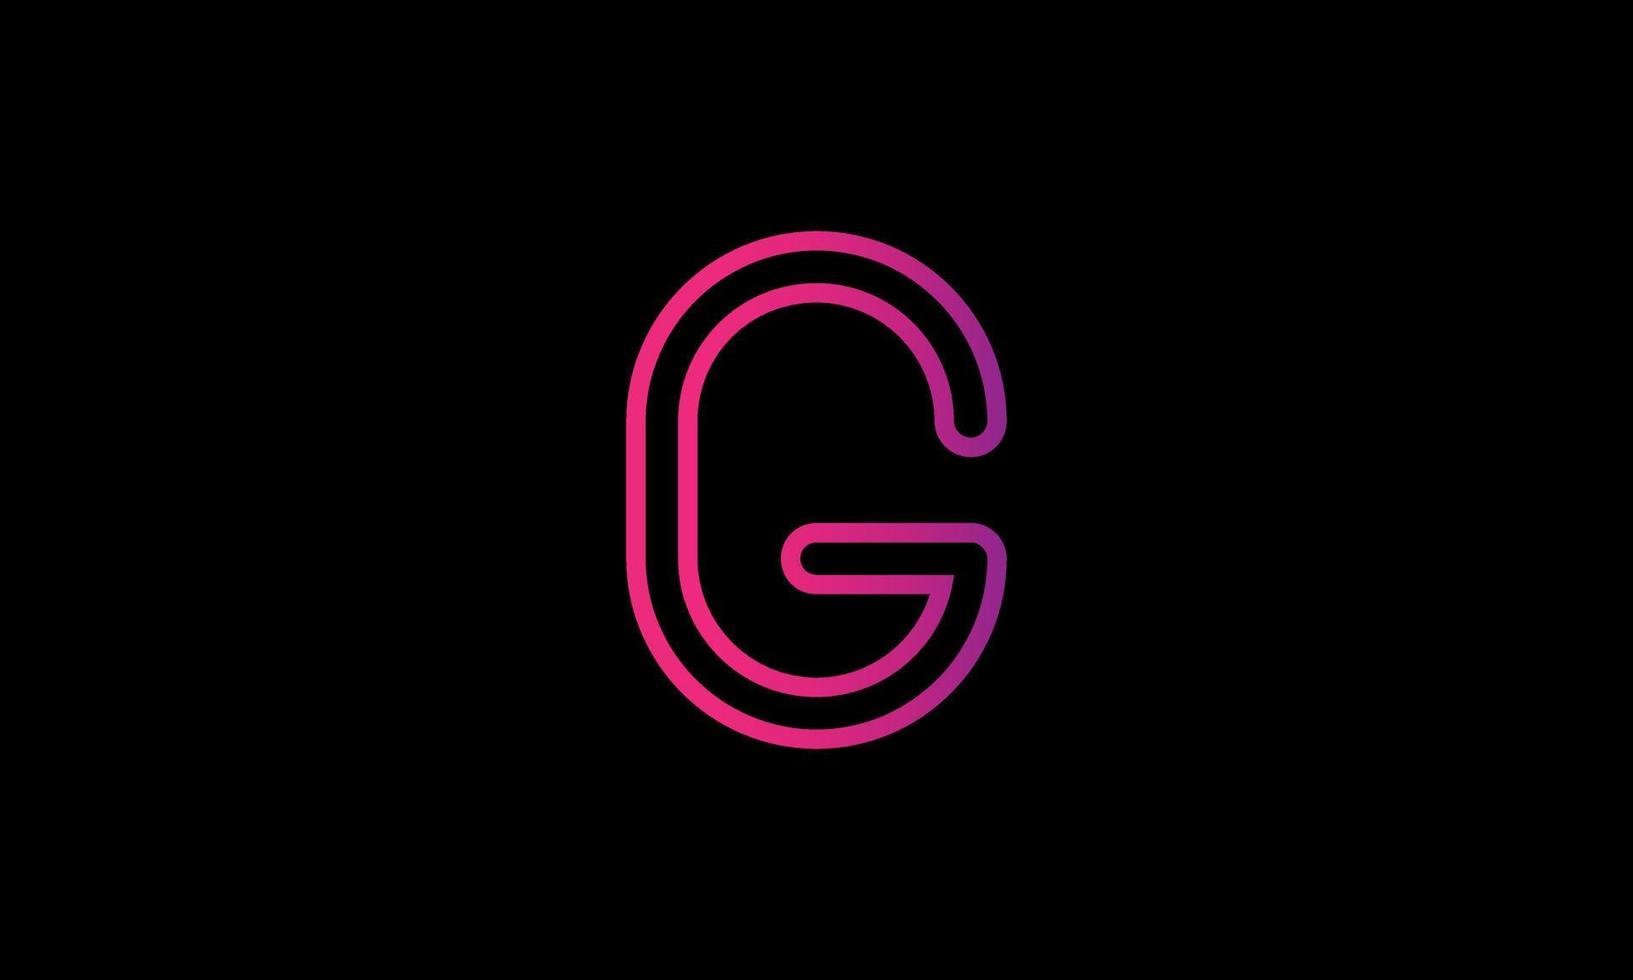 brief g logo ontwerp. eerste g brief logo ontwerp. g logo vector icoon ontwerp. g gemakkelijk logo ontwerp vrij vector sjabloon.